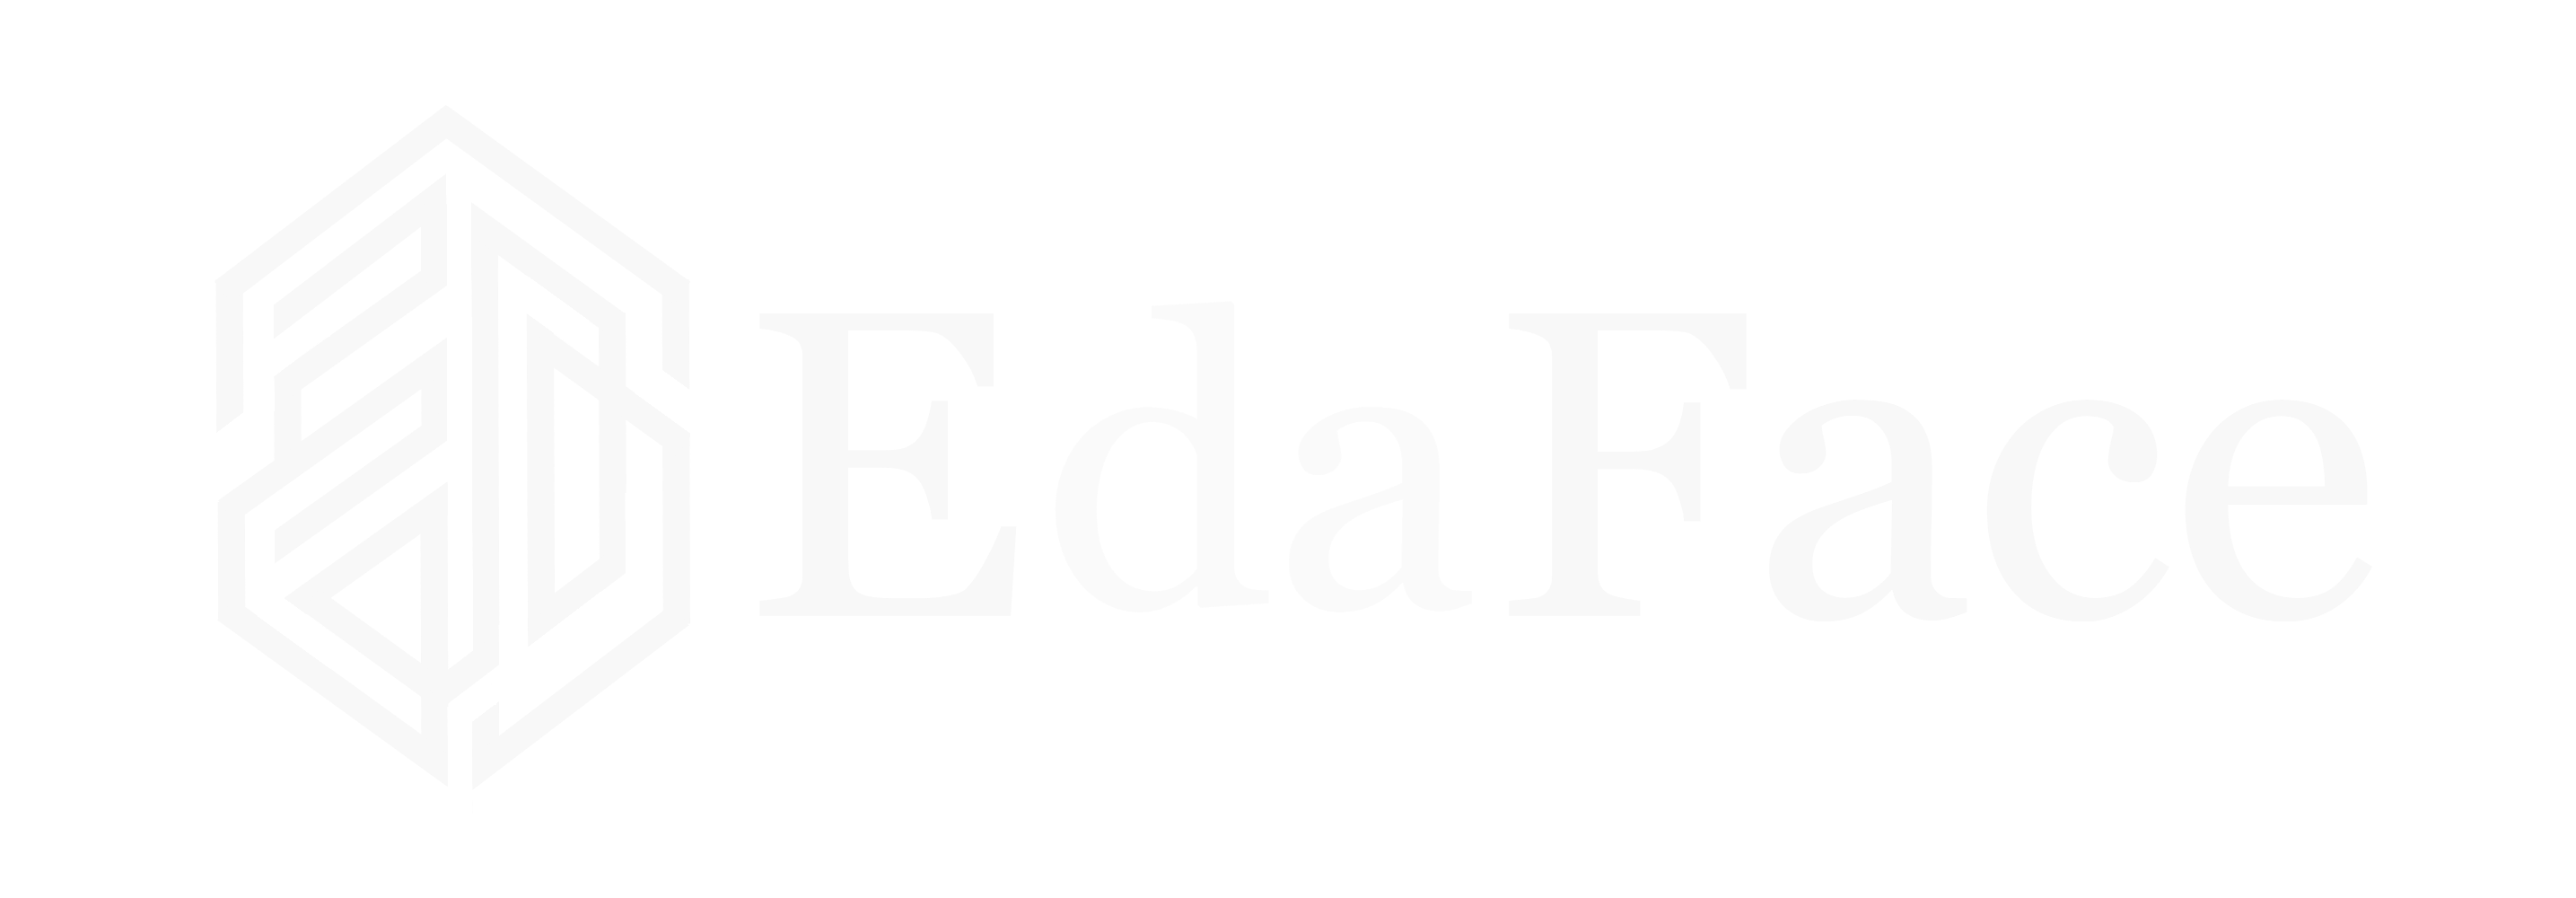 EdaFace Logo